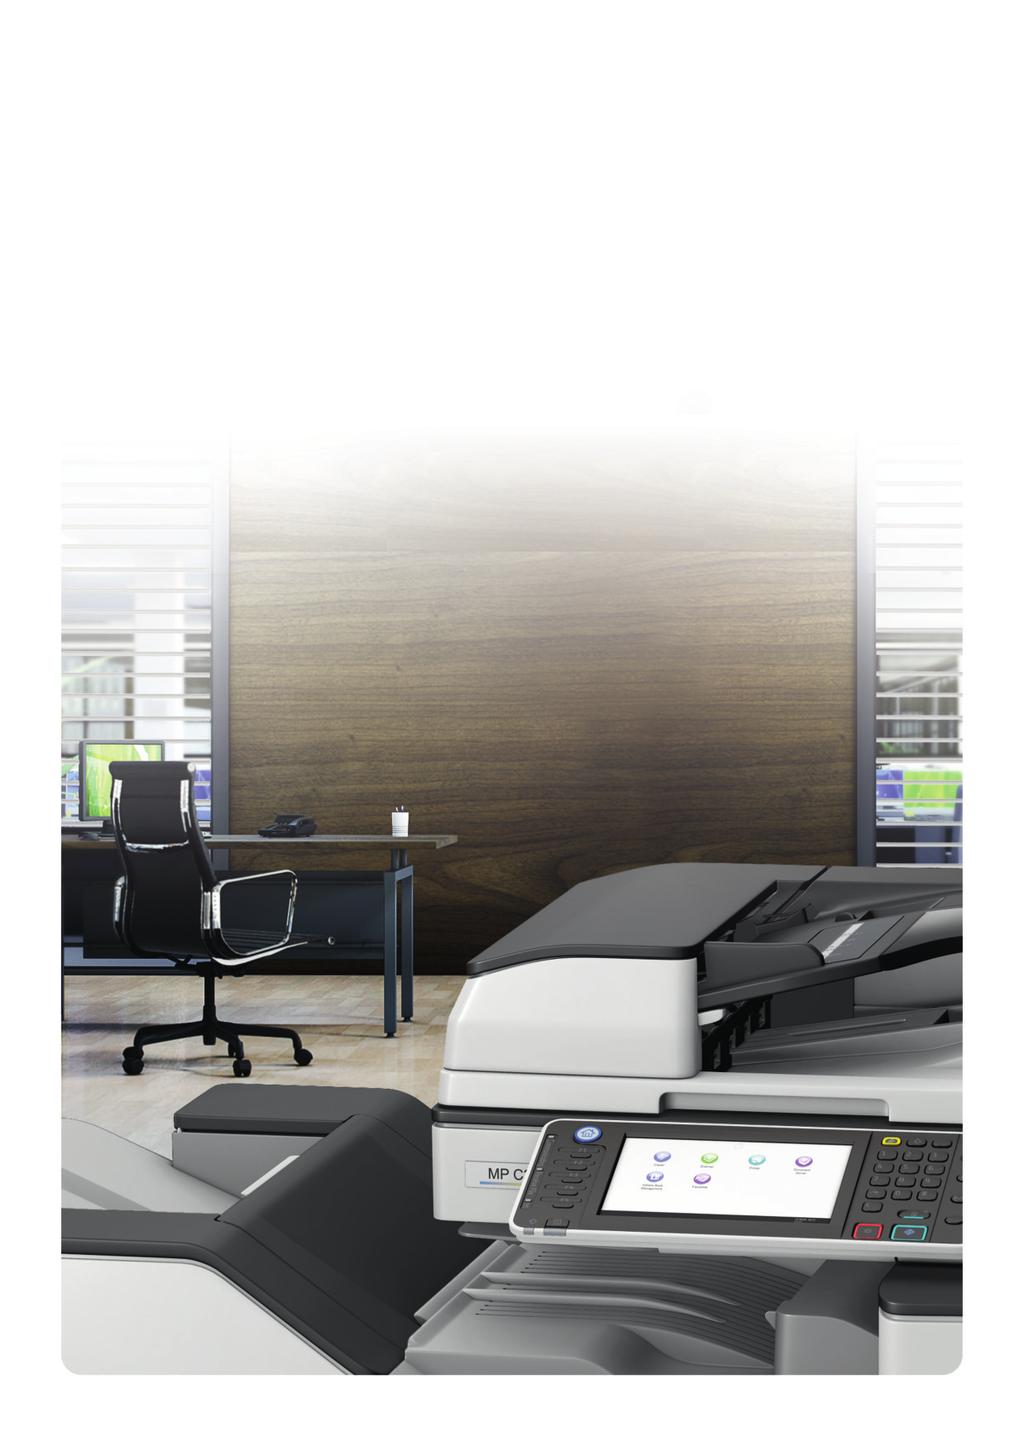 Vytvořte hyperefektivní pracoviště Zvyšte produktivitu svého pracoviště za pomocí výkonné barevné multifunkční kopírky Nashuatec MP C3003 / MP C3503.